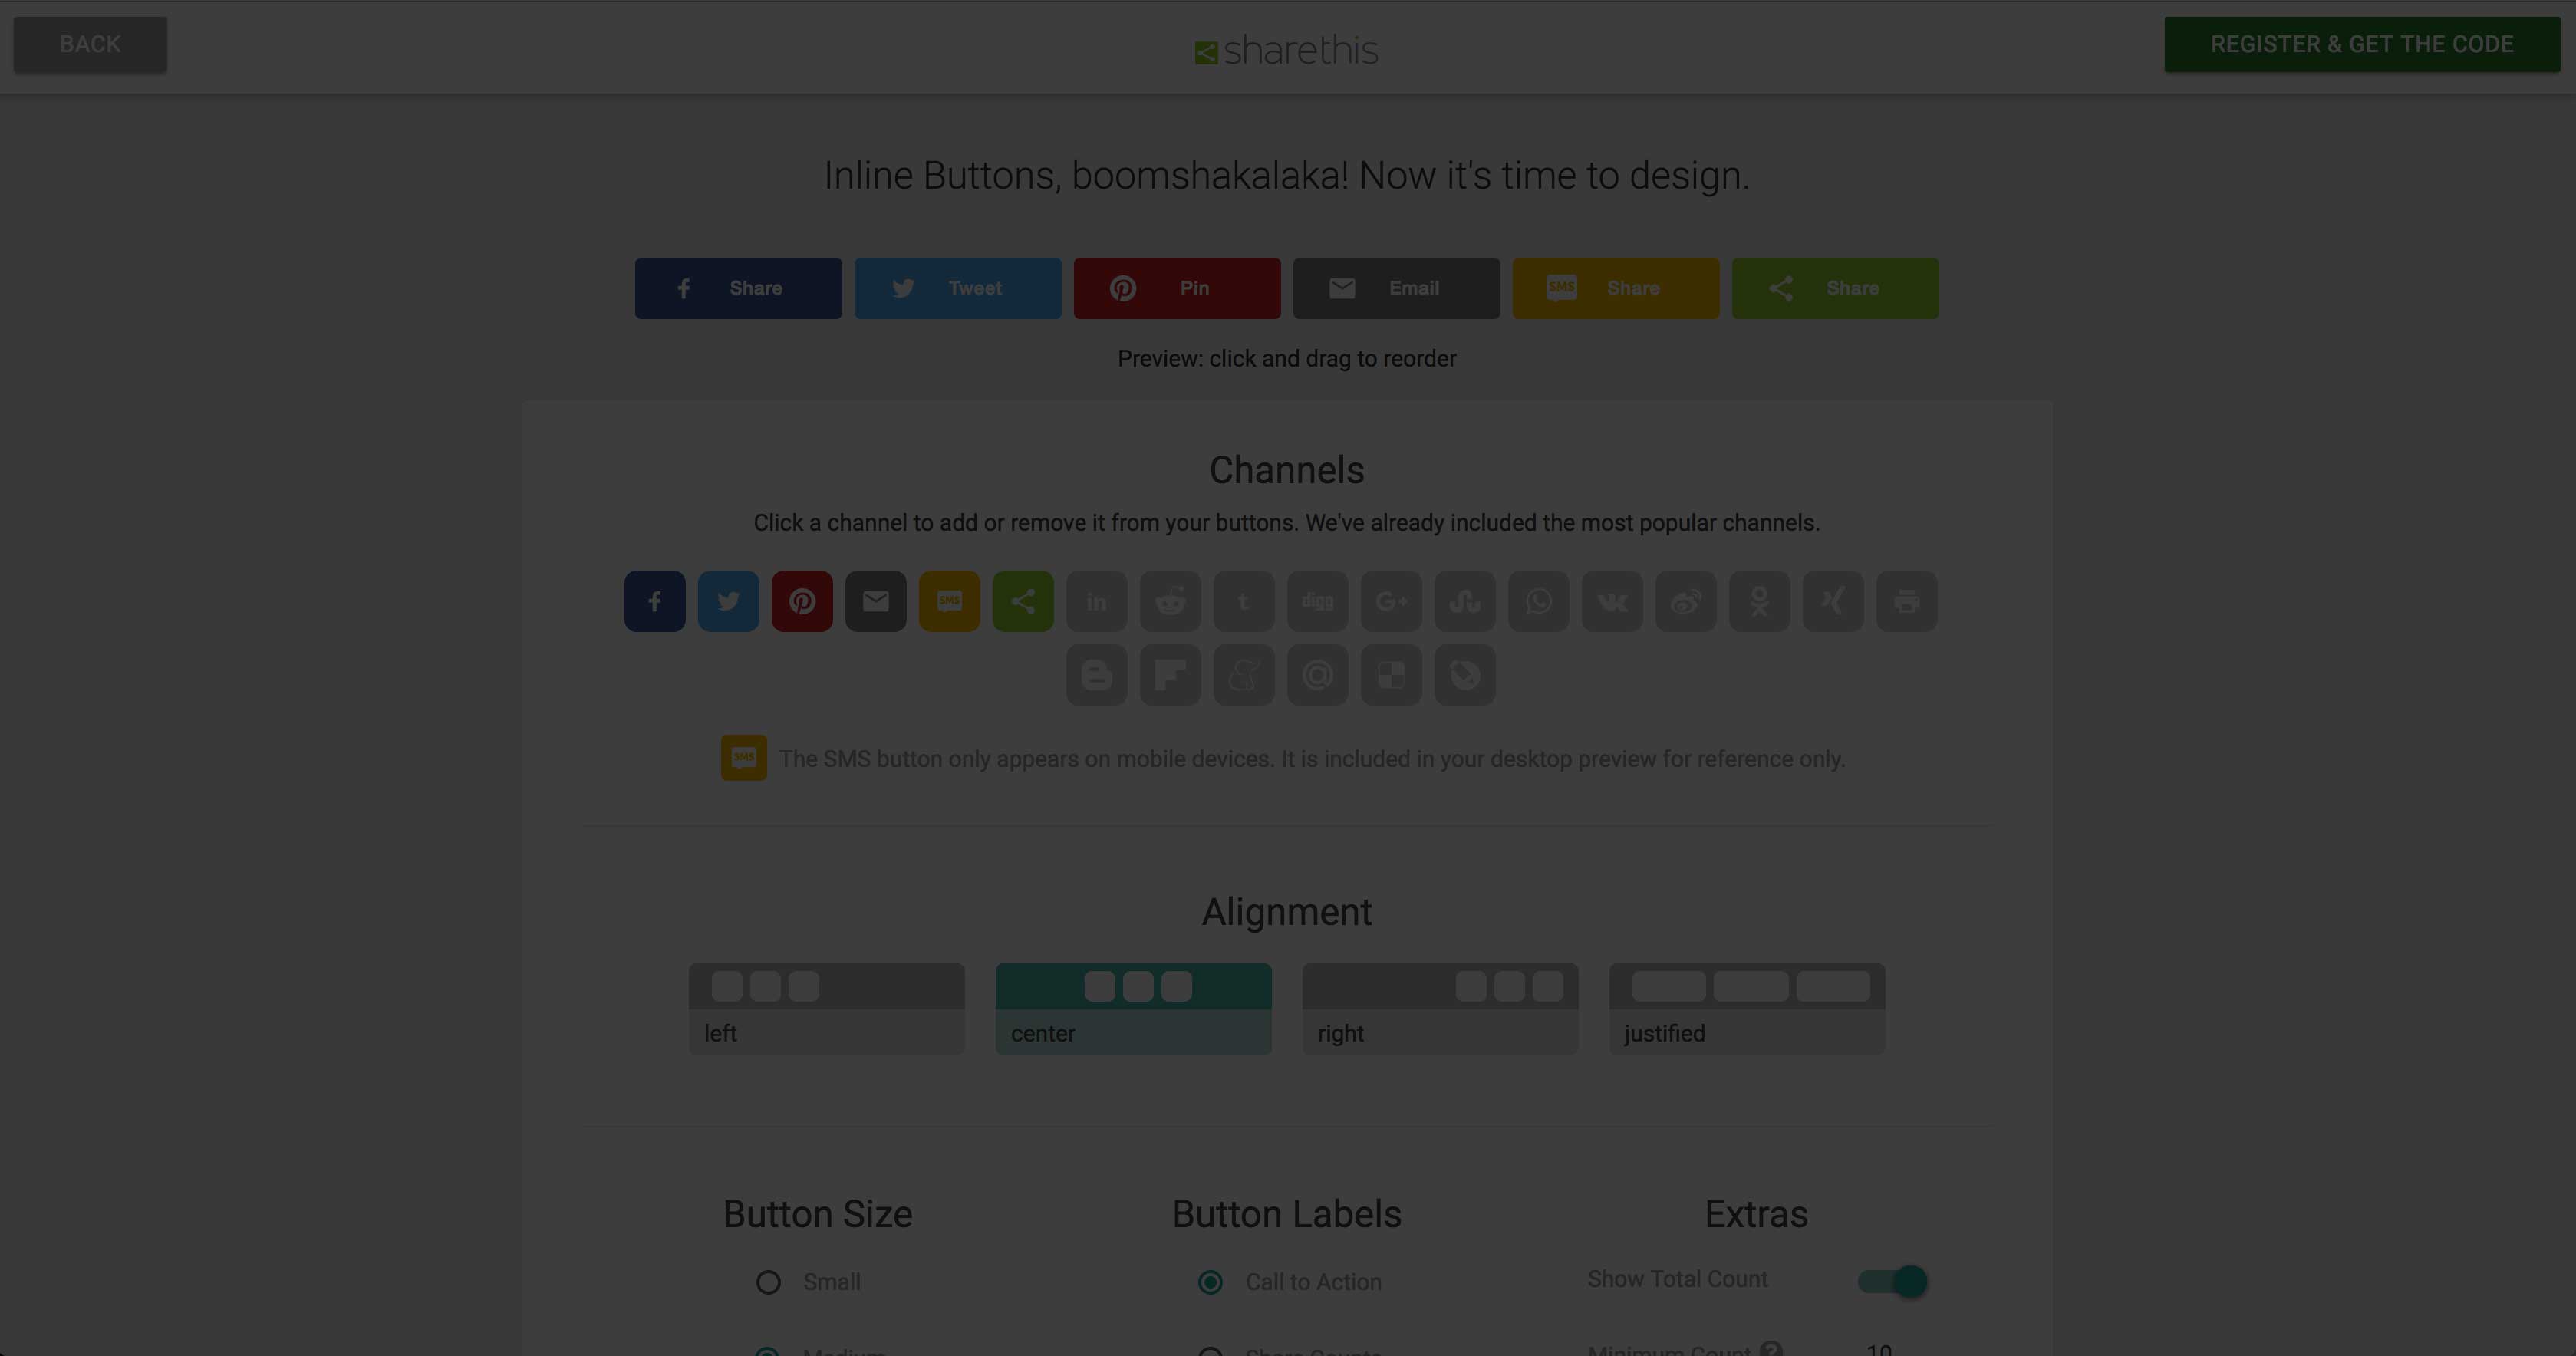 Rencontrez nos nouveaux boutons de partage: mobile optimisé, beau, et rapide de foudre